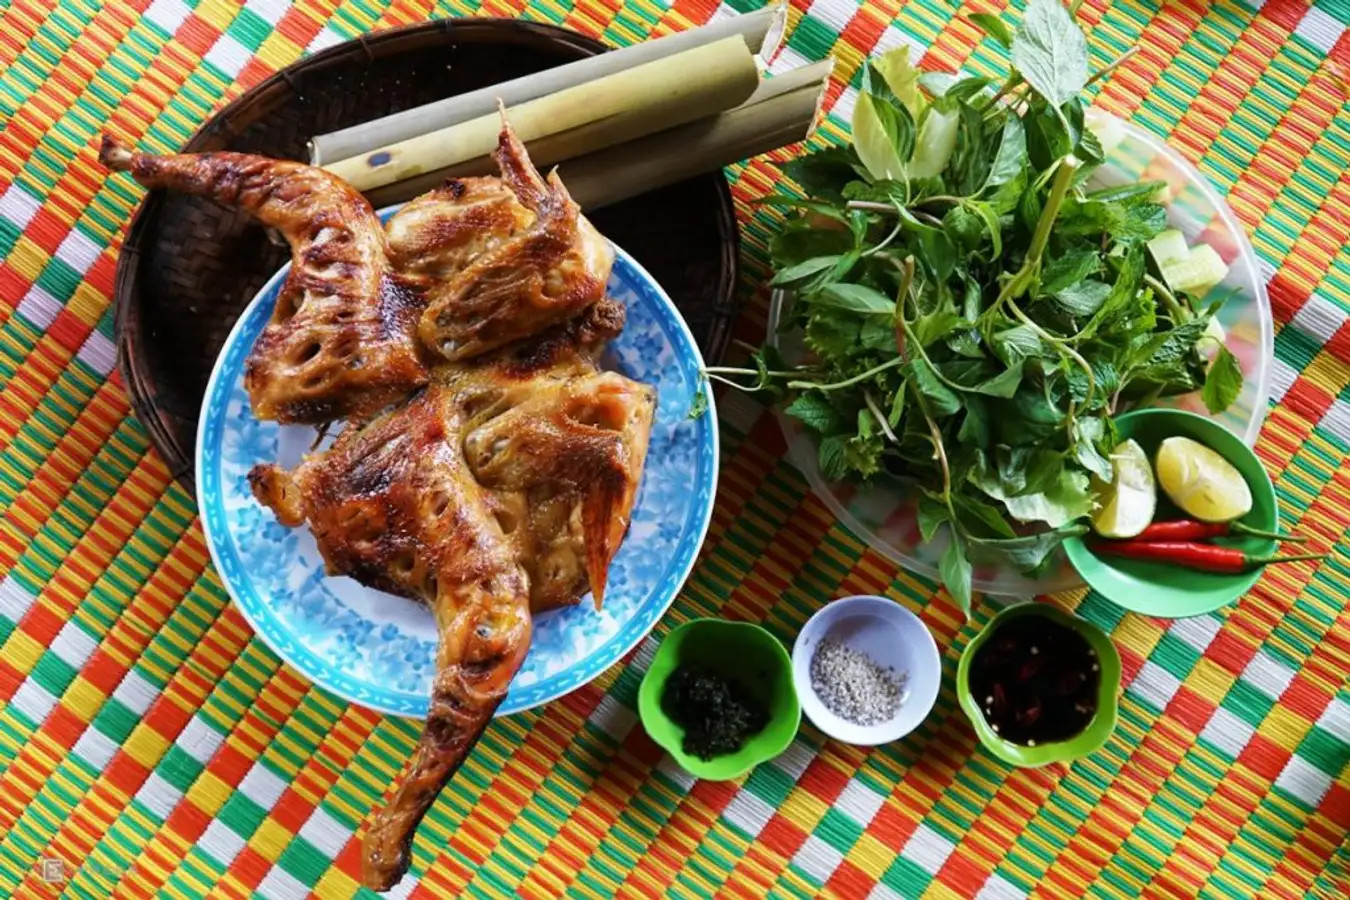 Gà nướng cơm lam-  Đặc sản núi rừng nổi tiếng của người đồng bào Tây Nguyên.